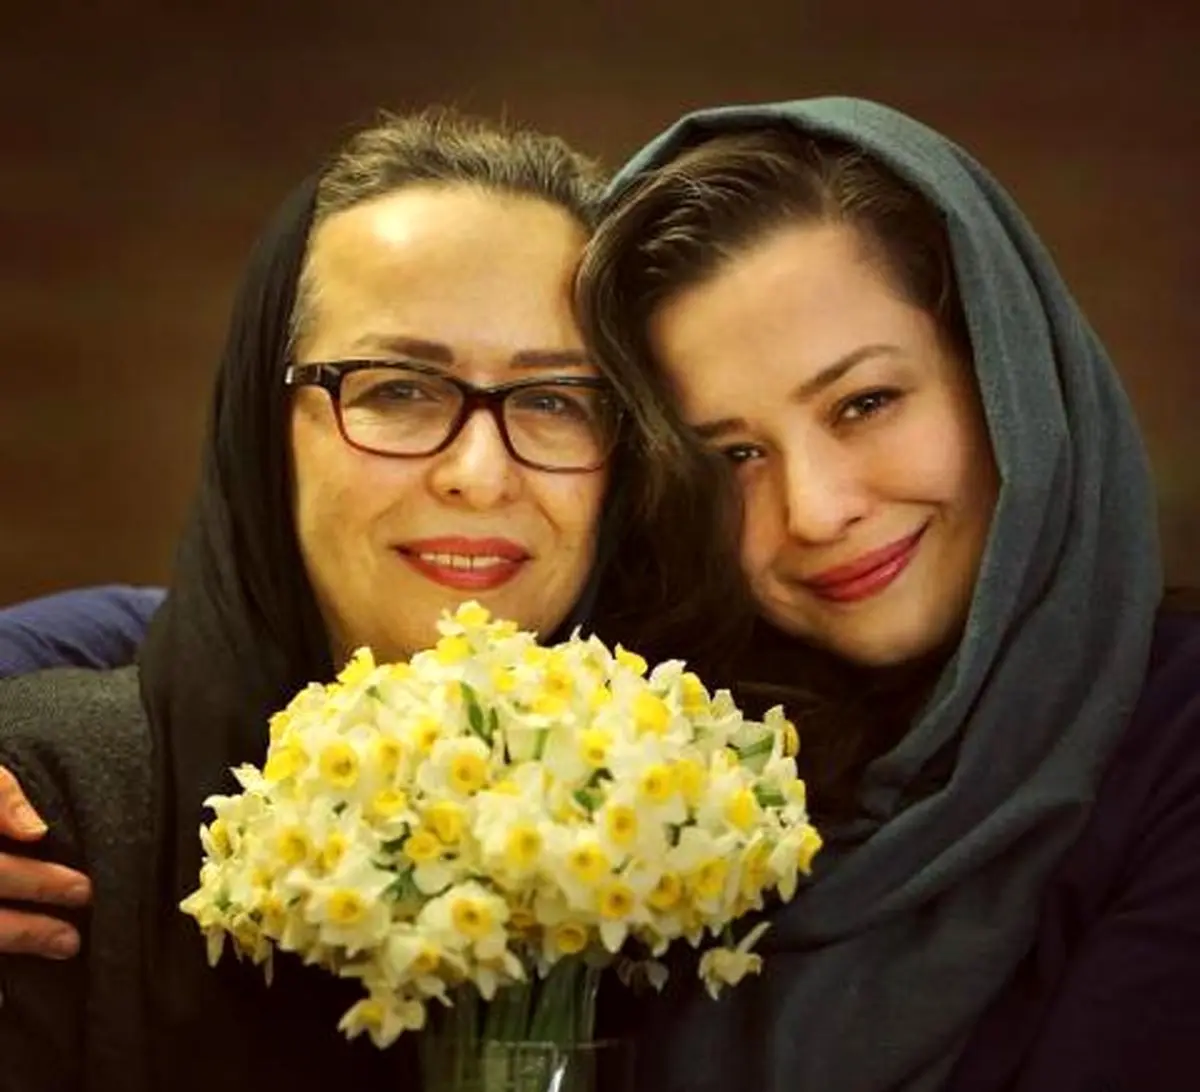 هدیه روز مادر "مهراوه شریفی نیا" به "آزیتا حاجیان" + عکس